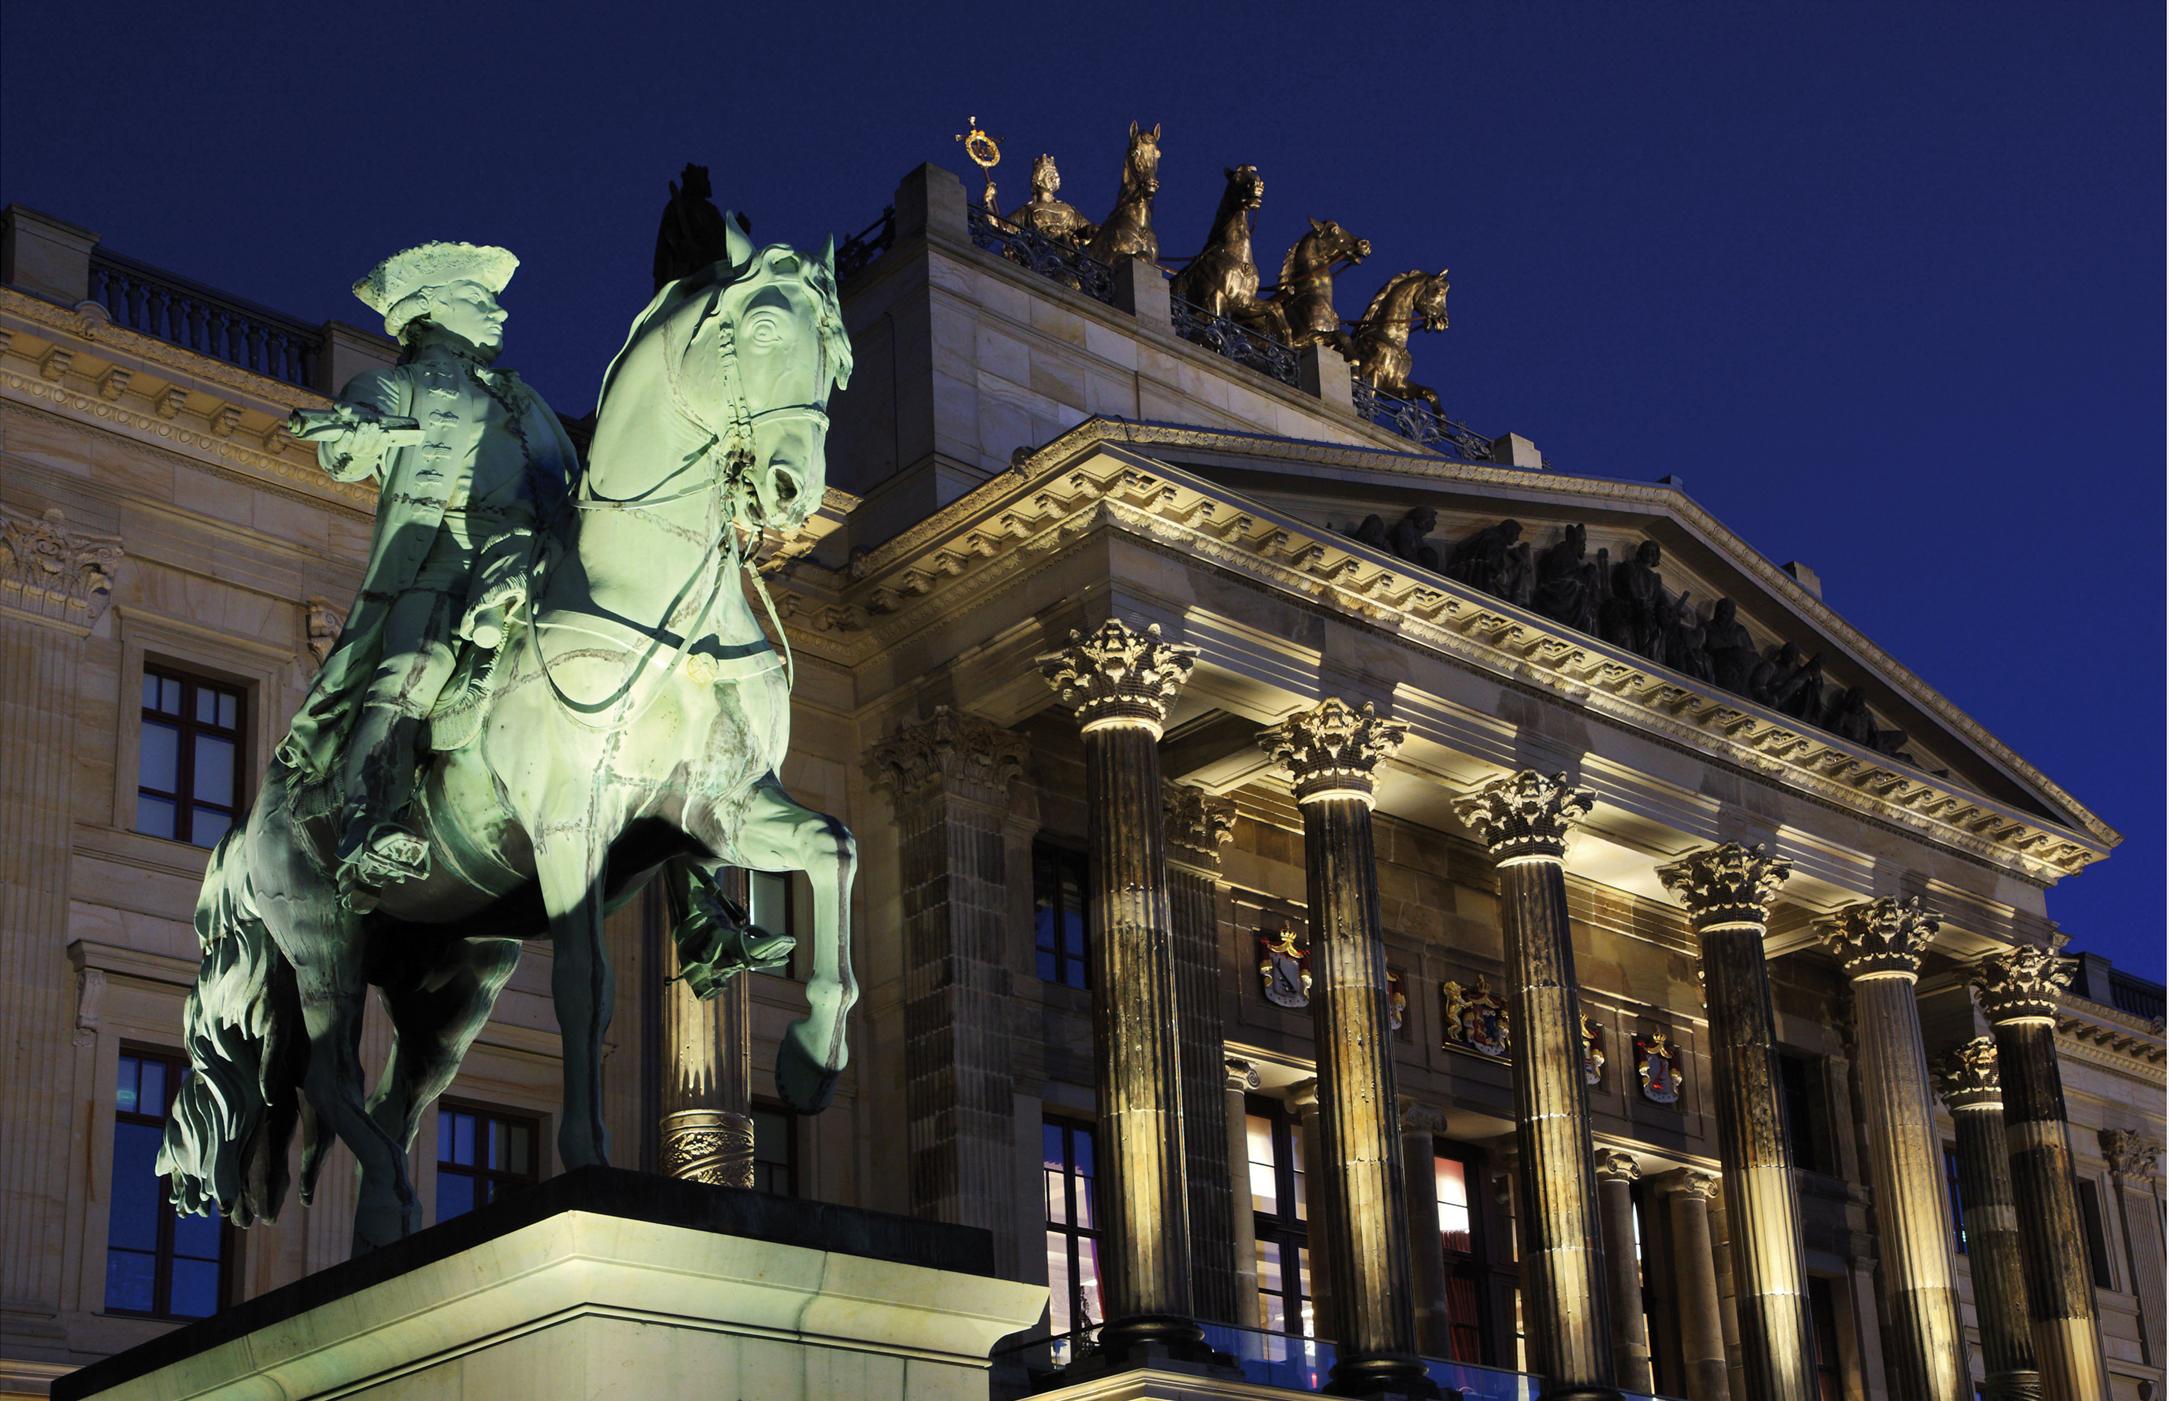 Braunschweiger Schloßfront bei Nacht mit Reiterstatue.
